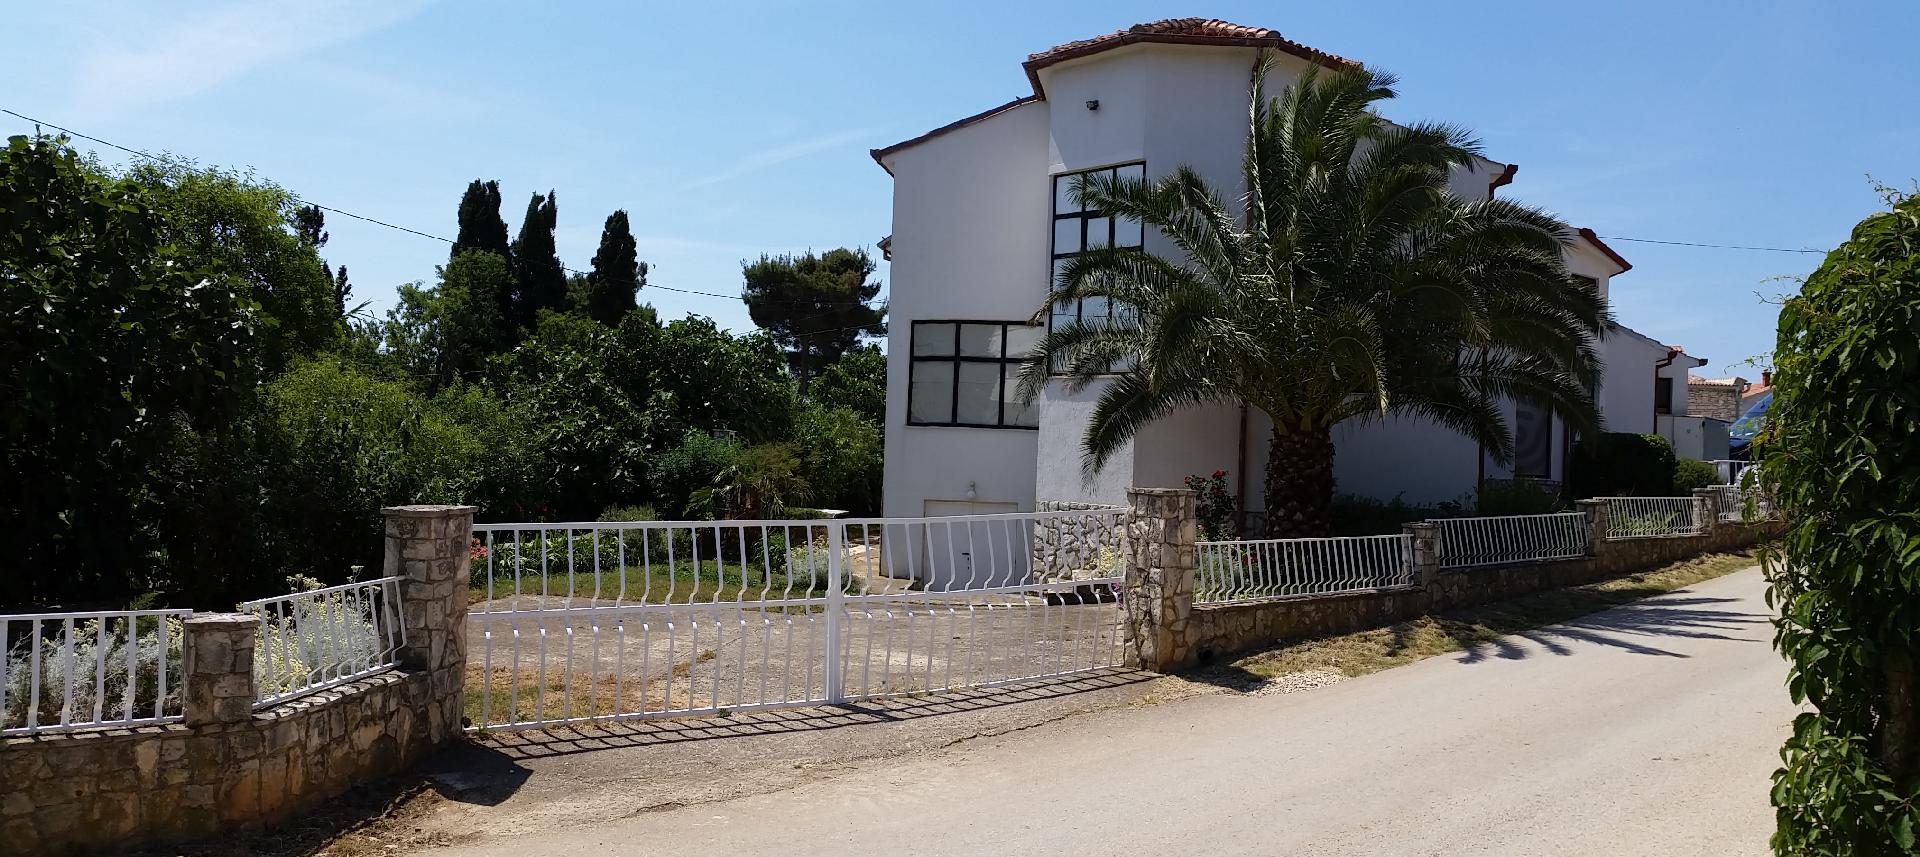 Ferienwohnung für vier Personen mit Terrasse  Ferienhaus in Istrien